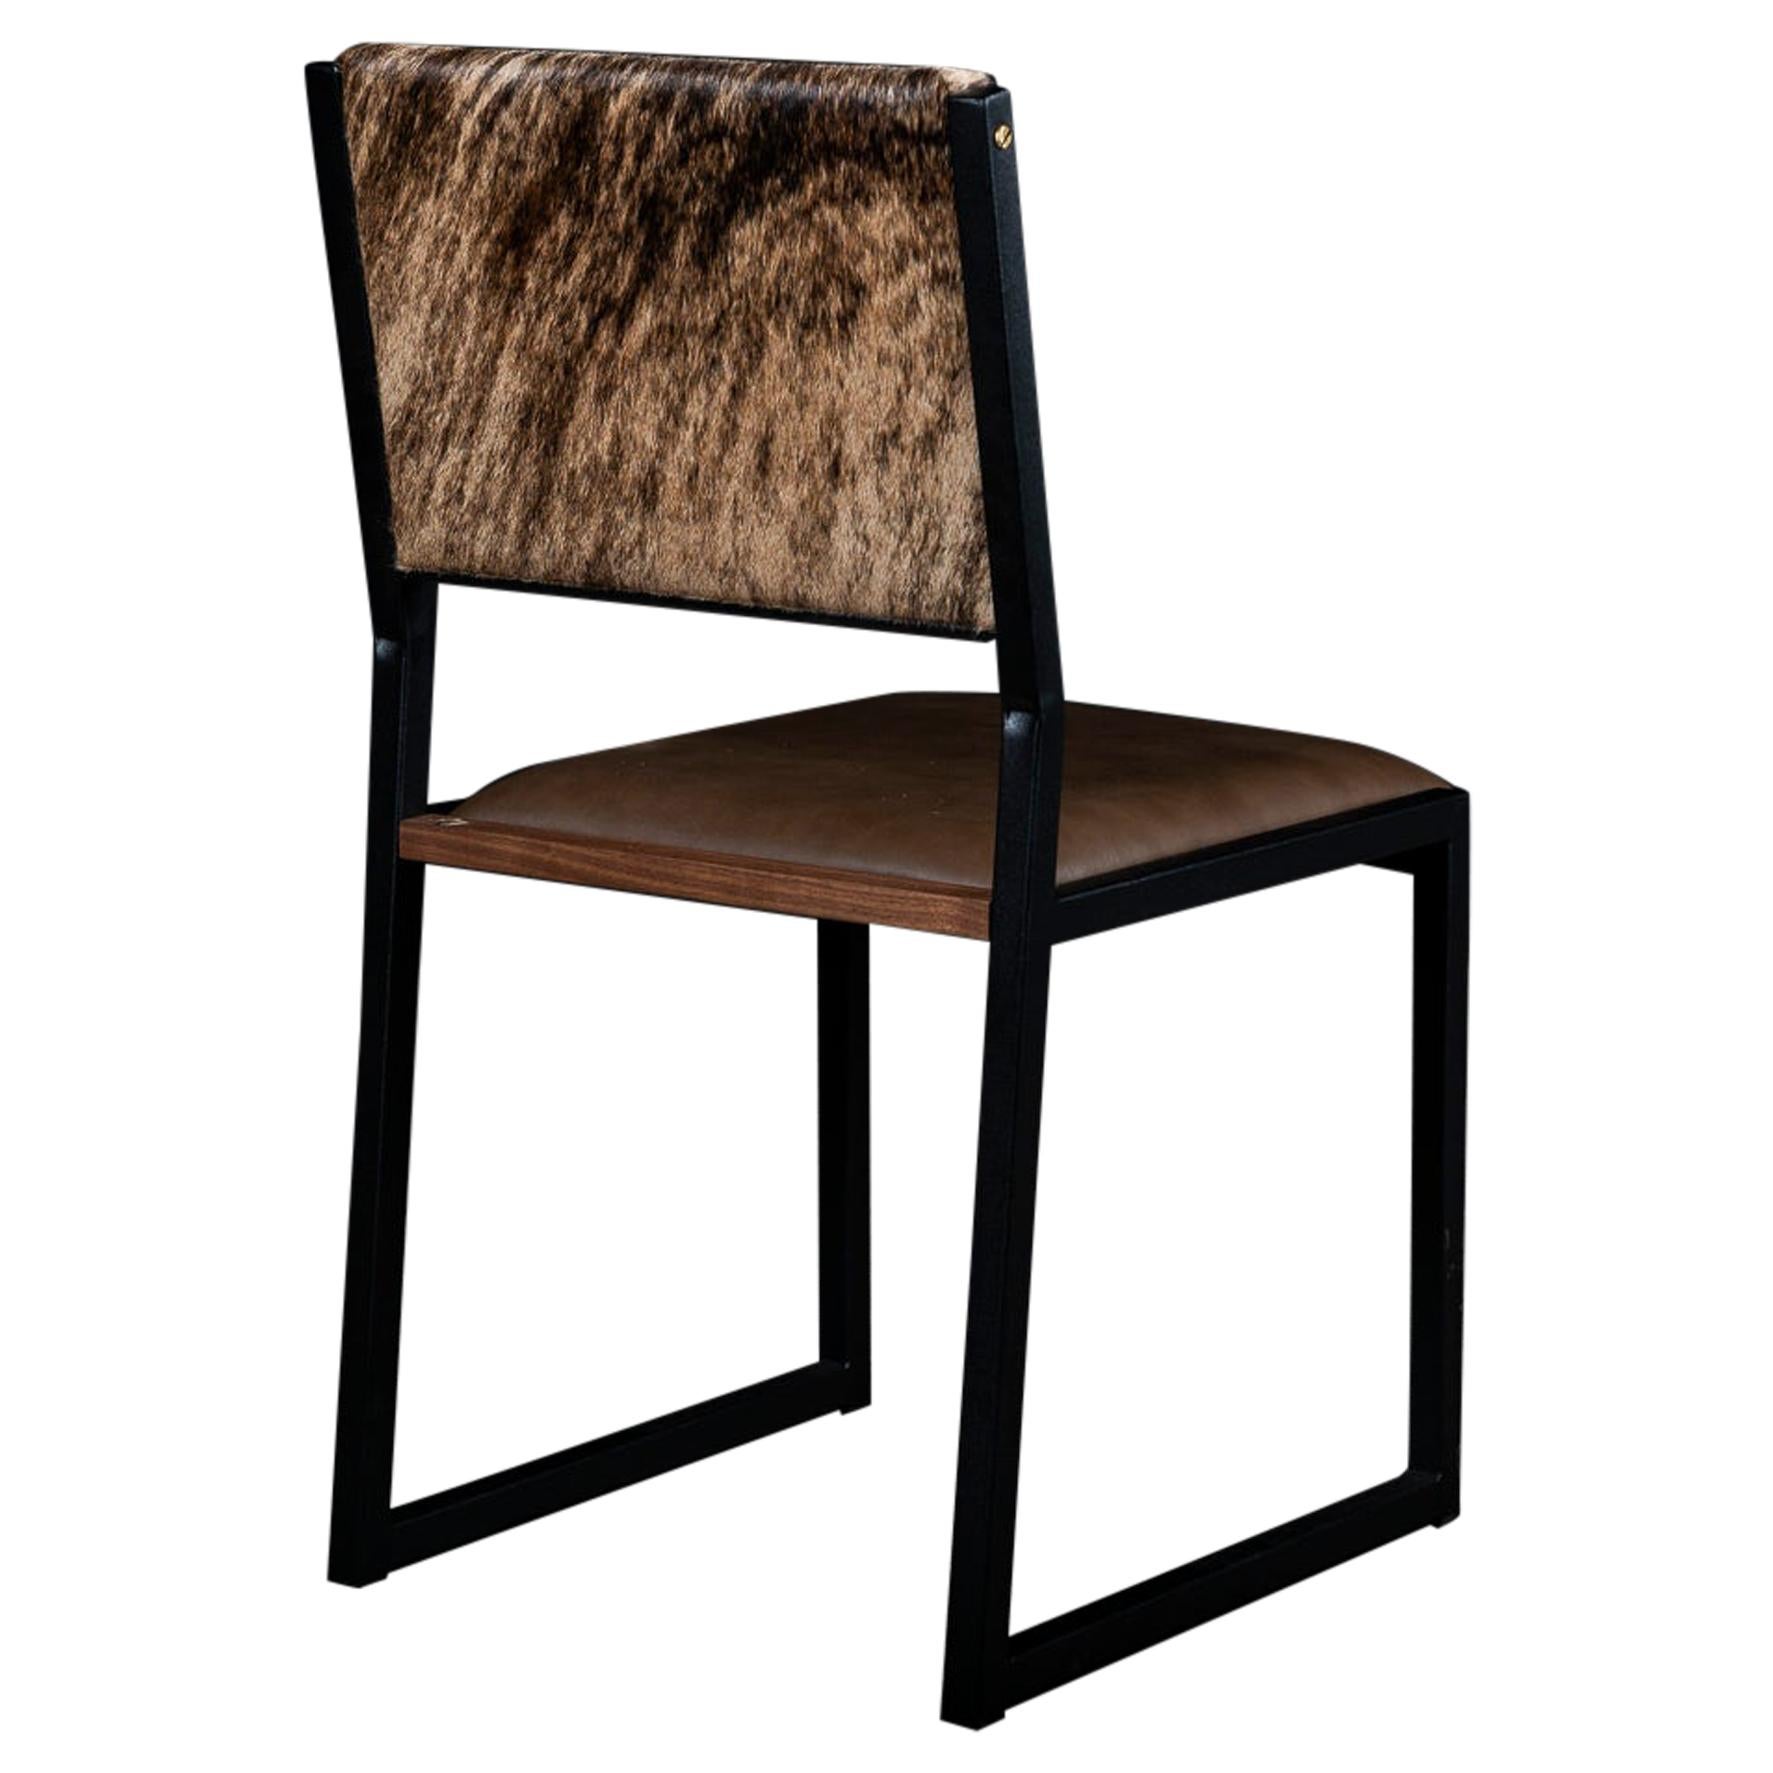 Shaker Moderner Stuhl von Ambrozia, Nussbaum, braunes Leder, hellbraunes Brindle-Haar